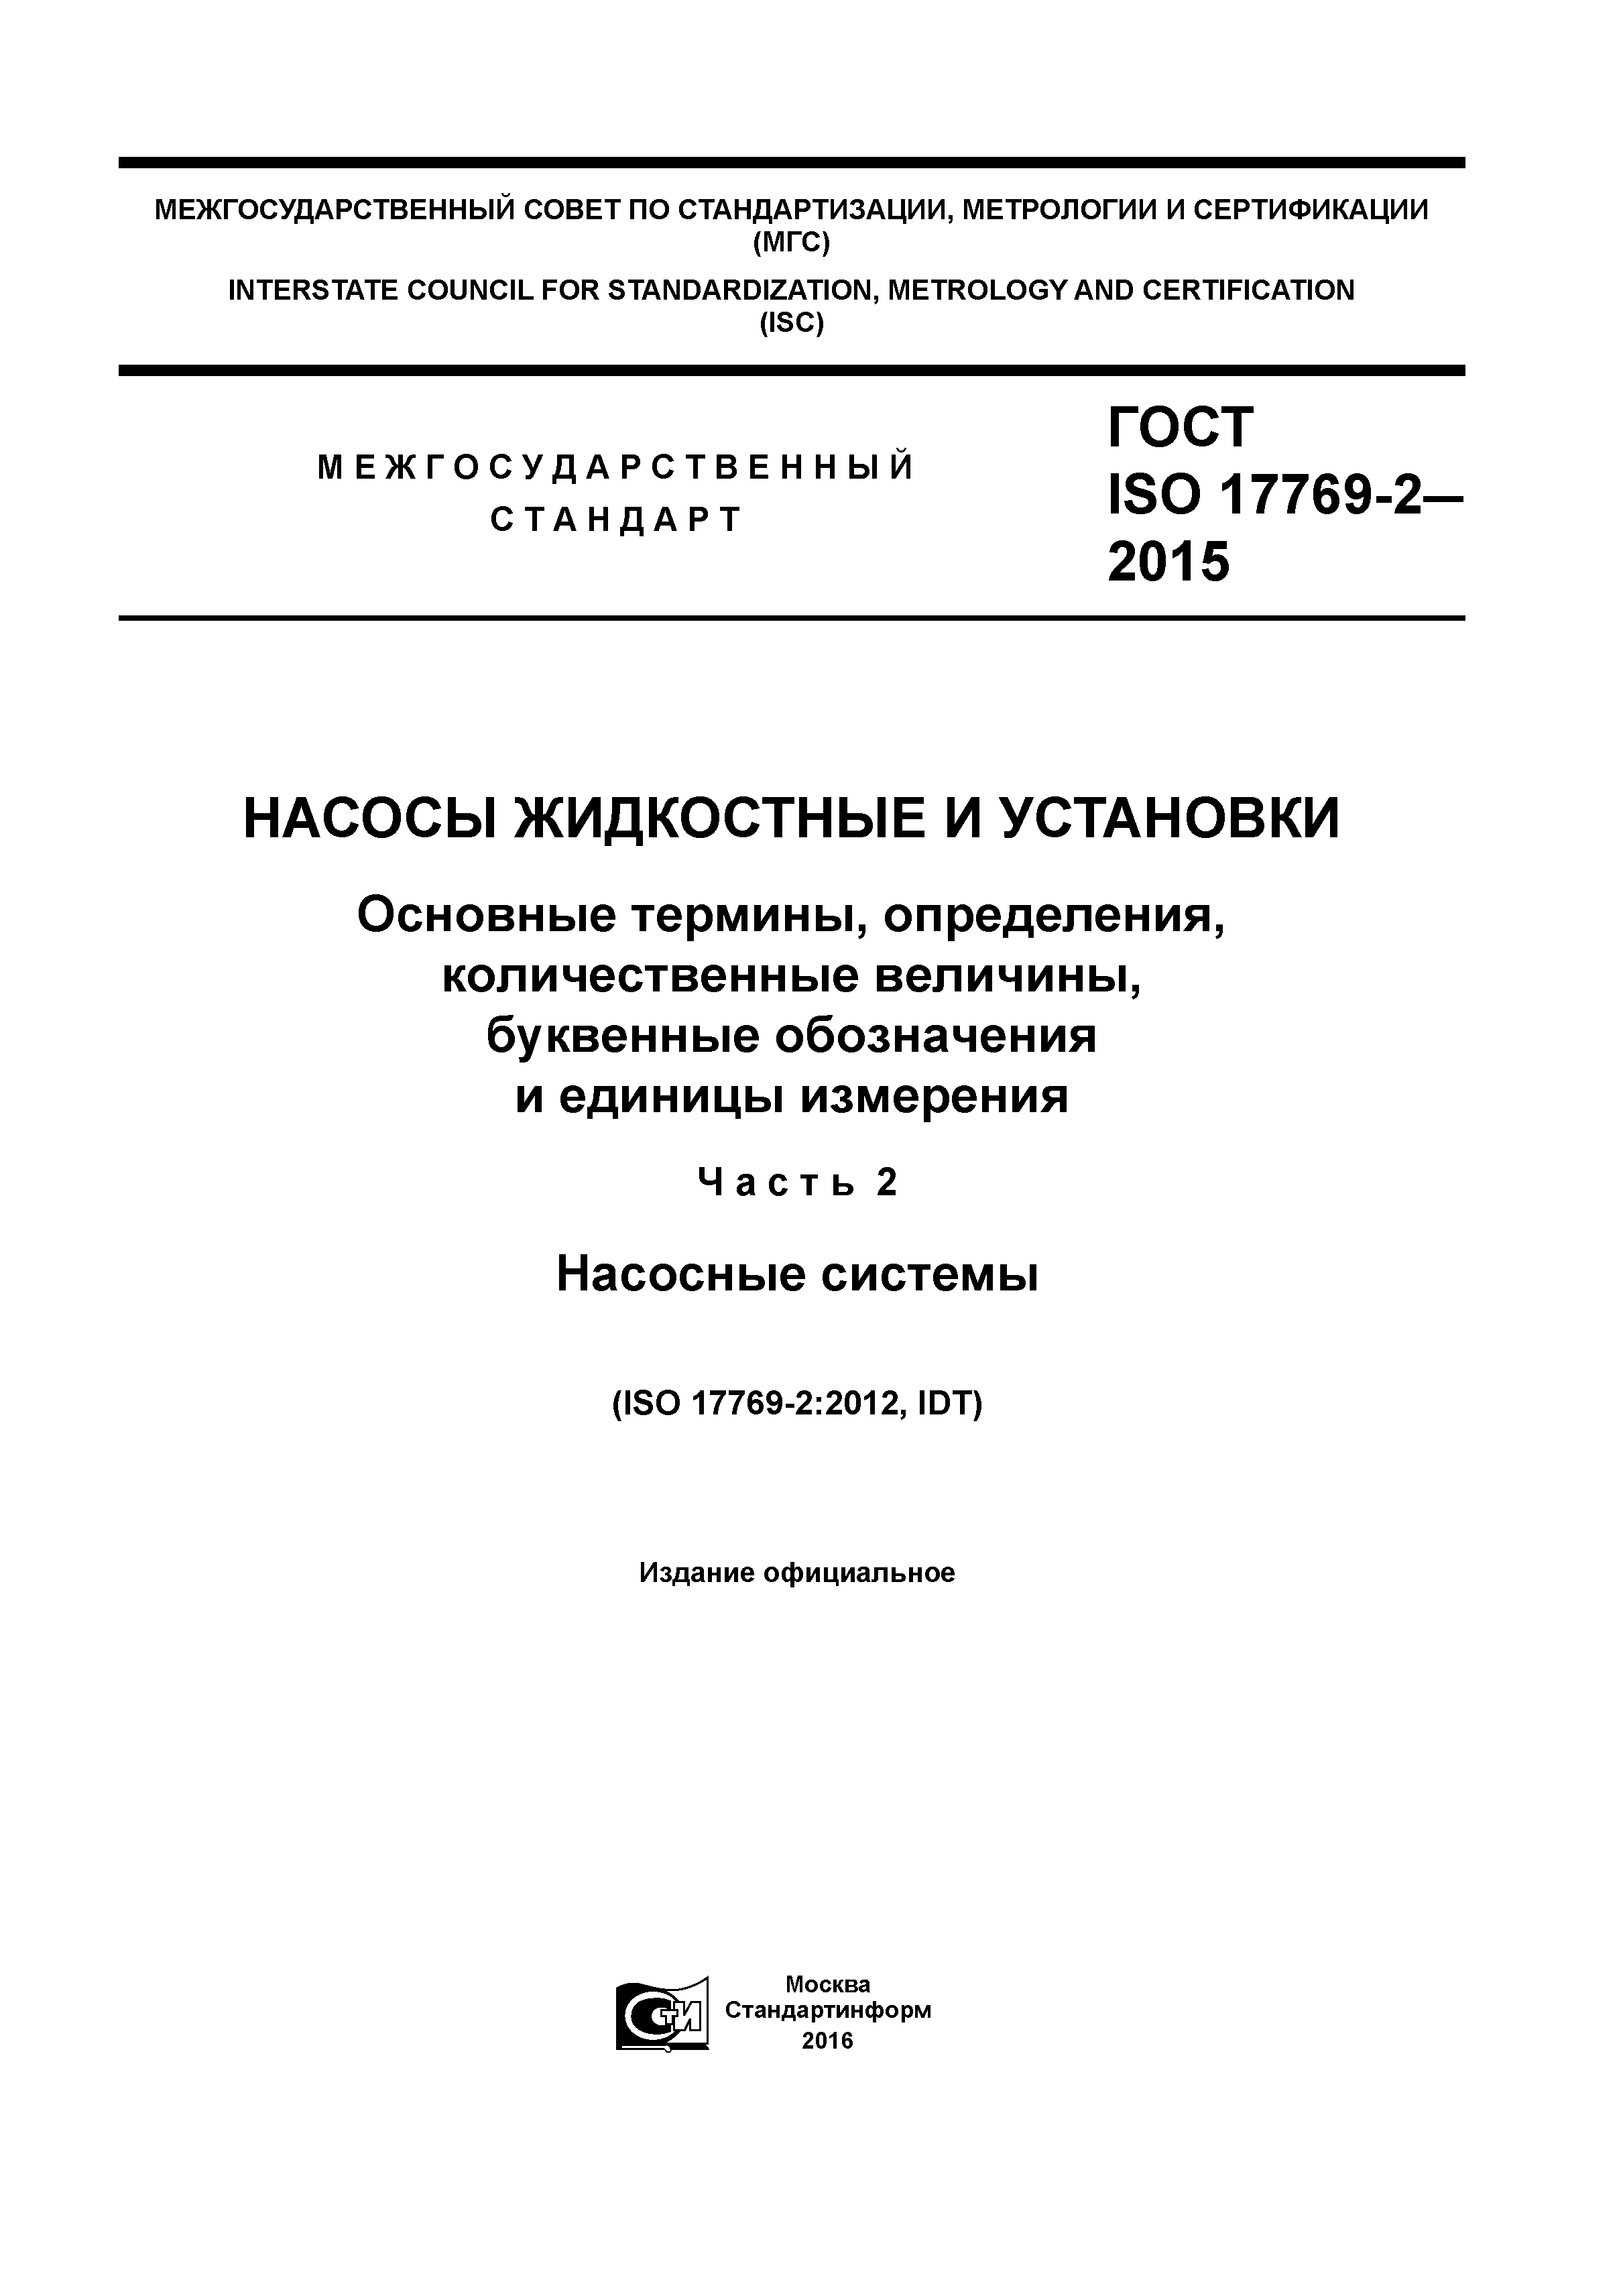 ГОСТ ISO 17769-2-2015